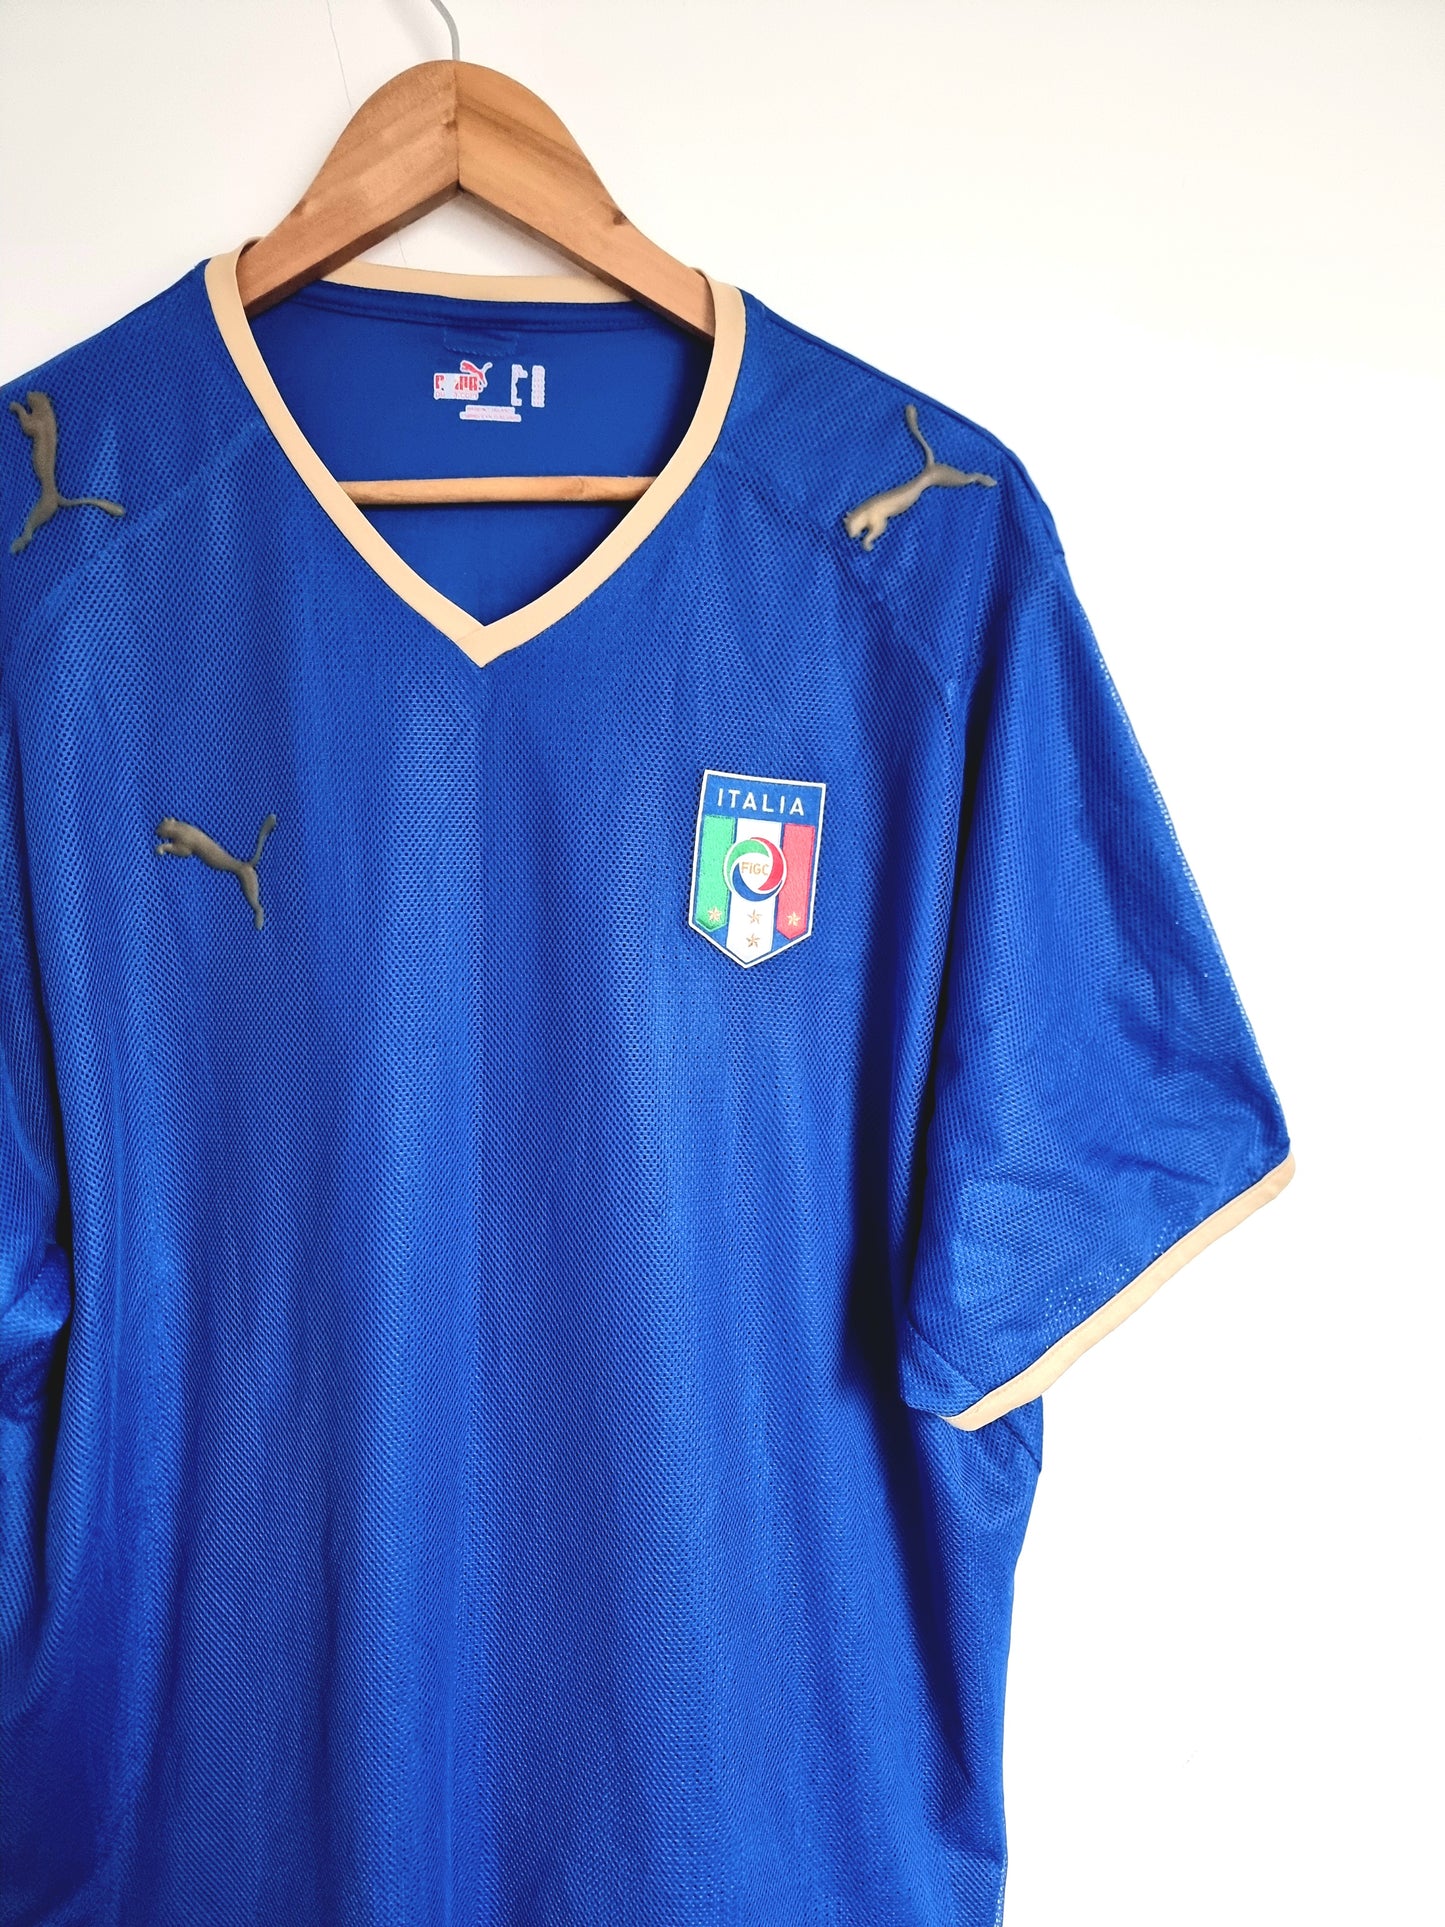 Puma Italy 07/08 Home Shirt XXL